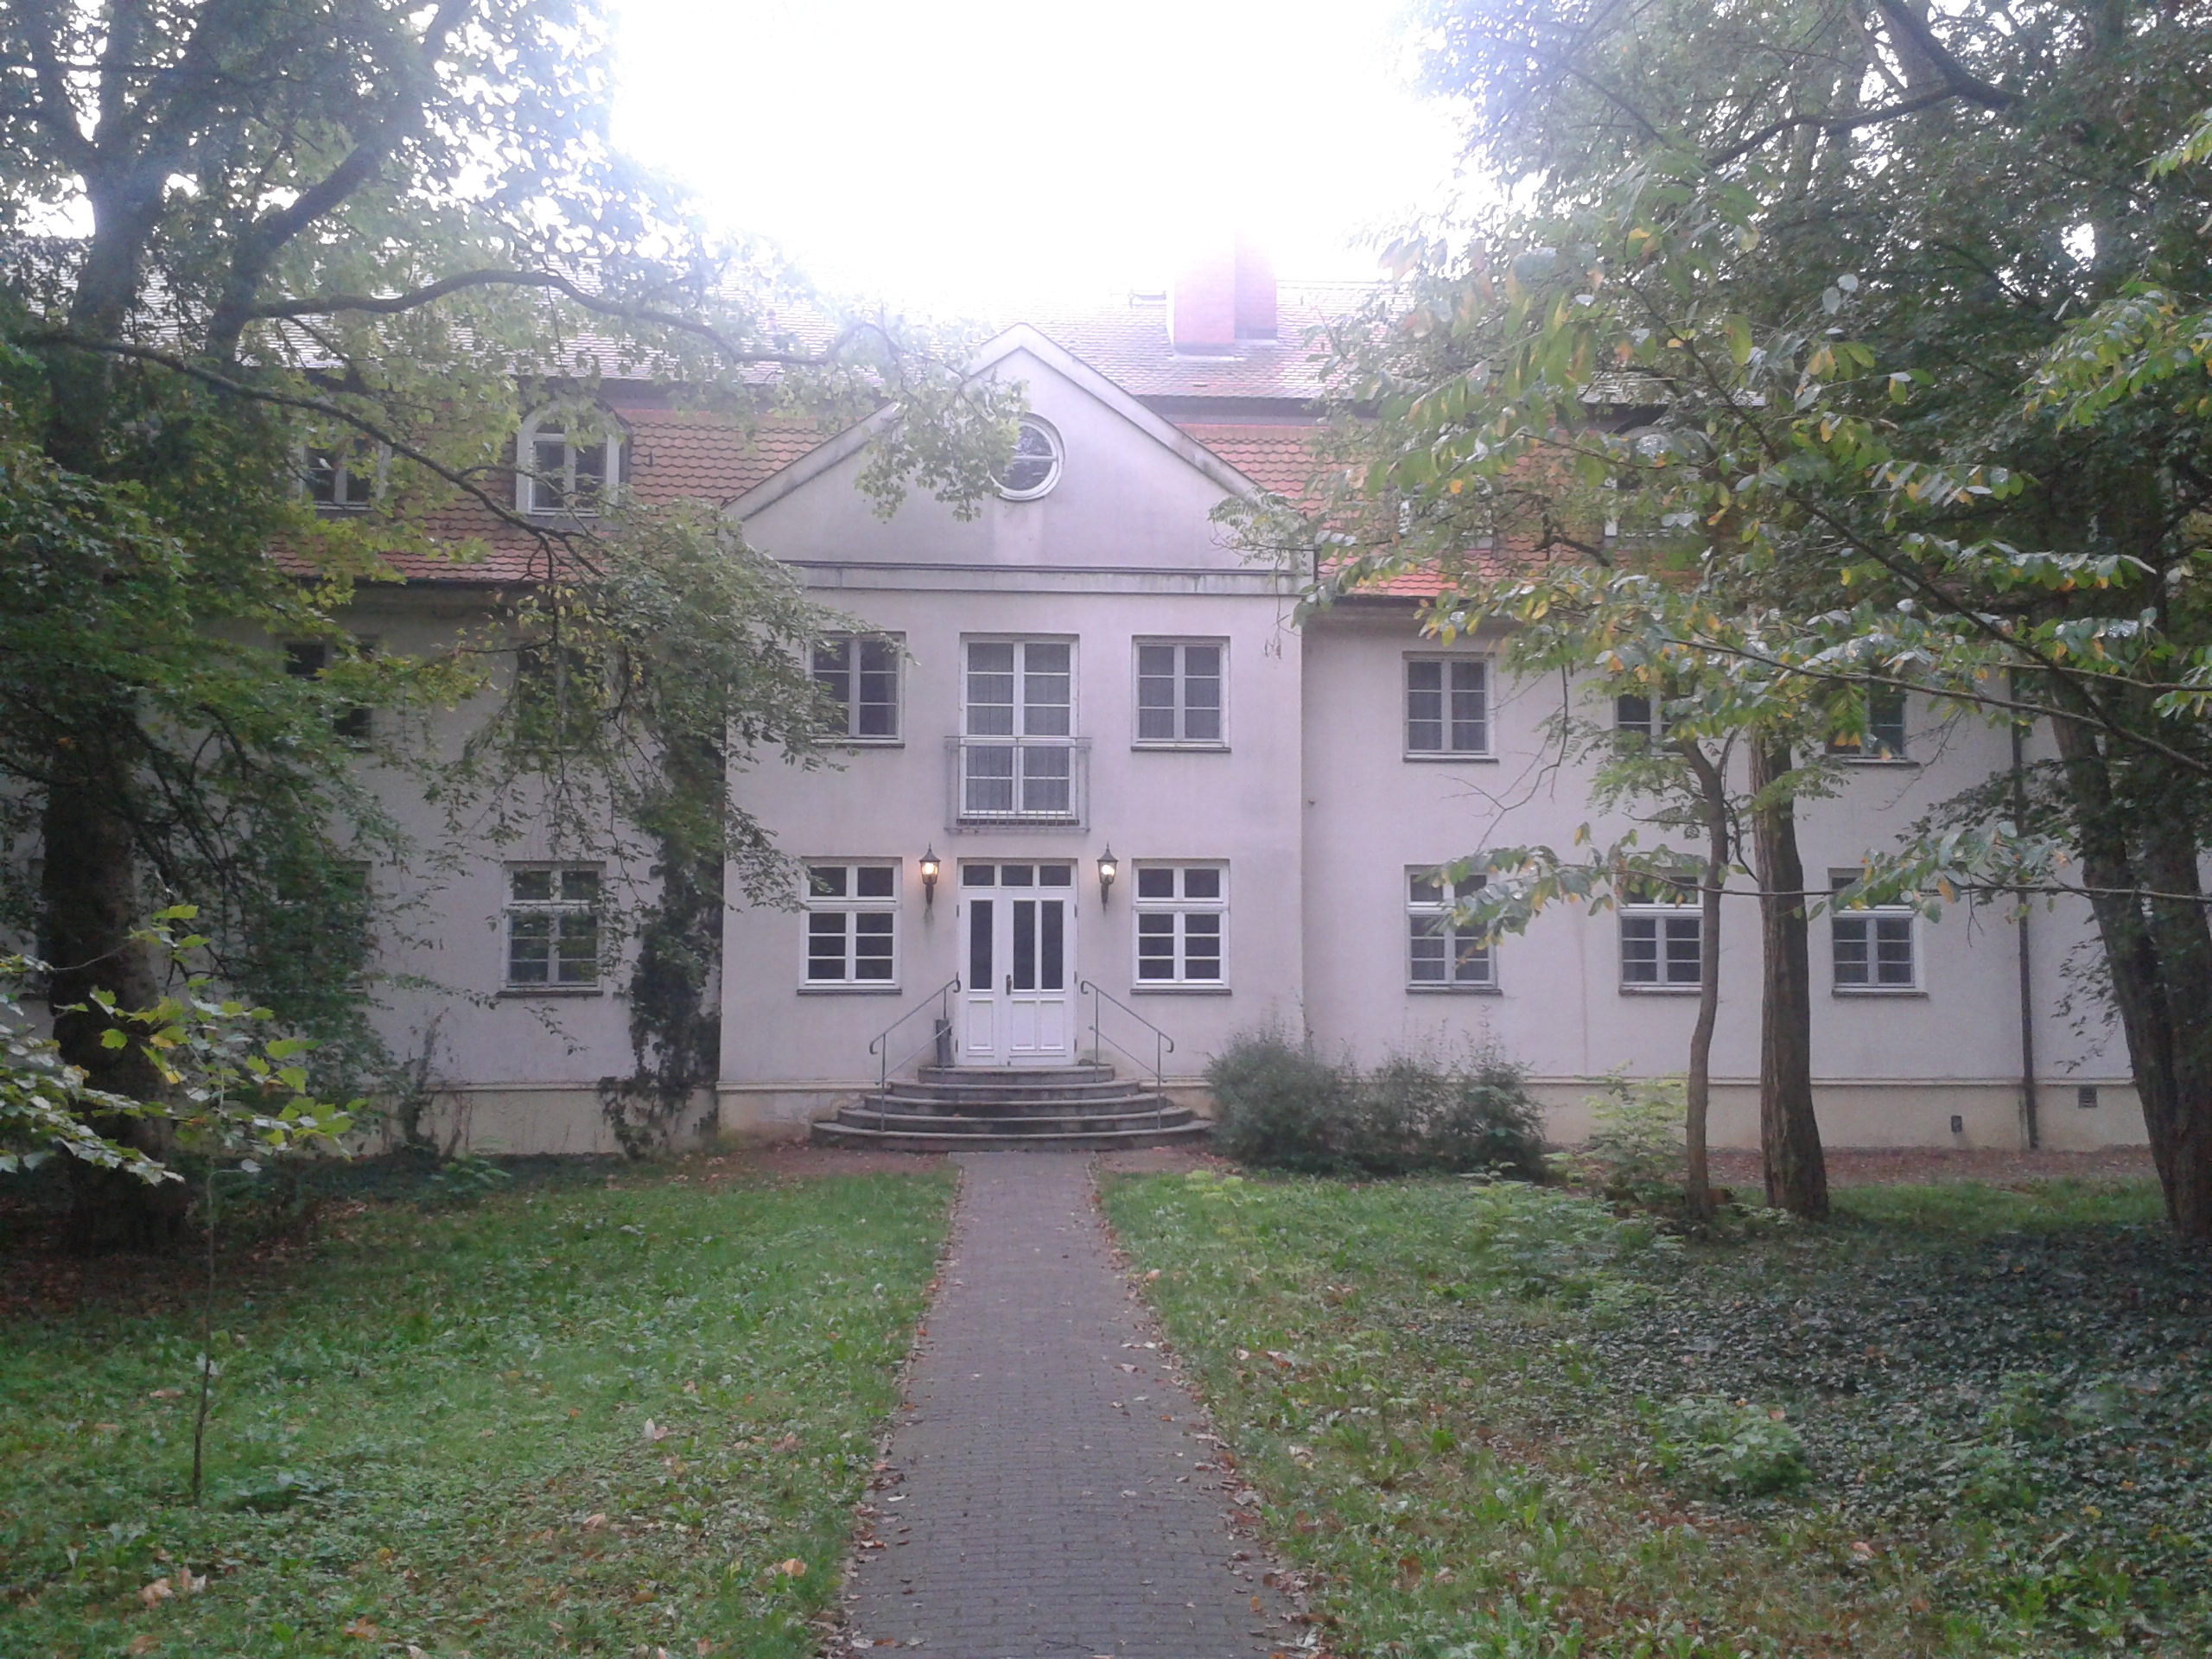 Seminarhaus